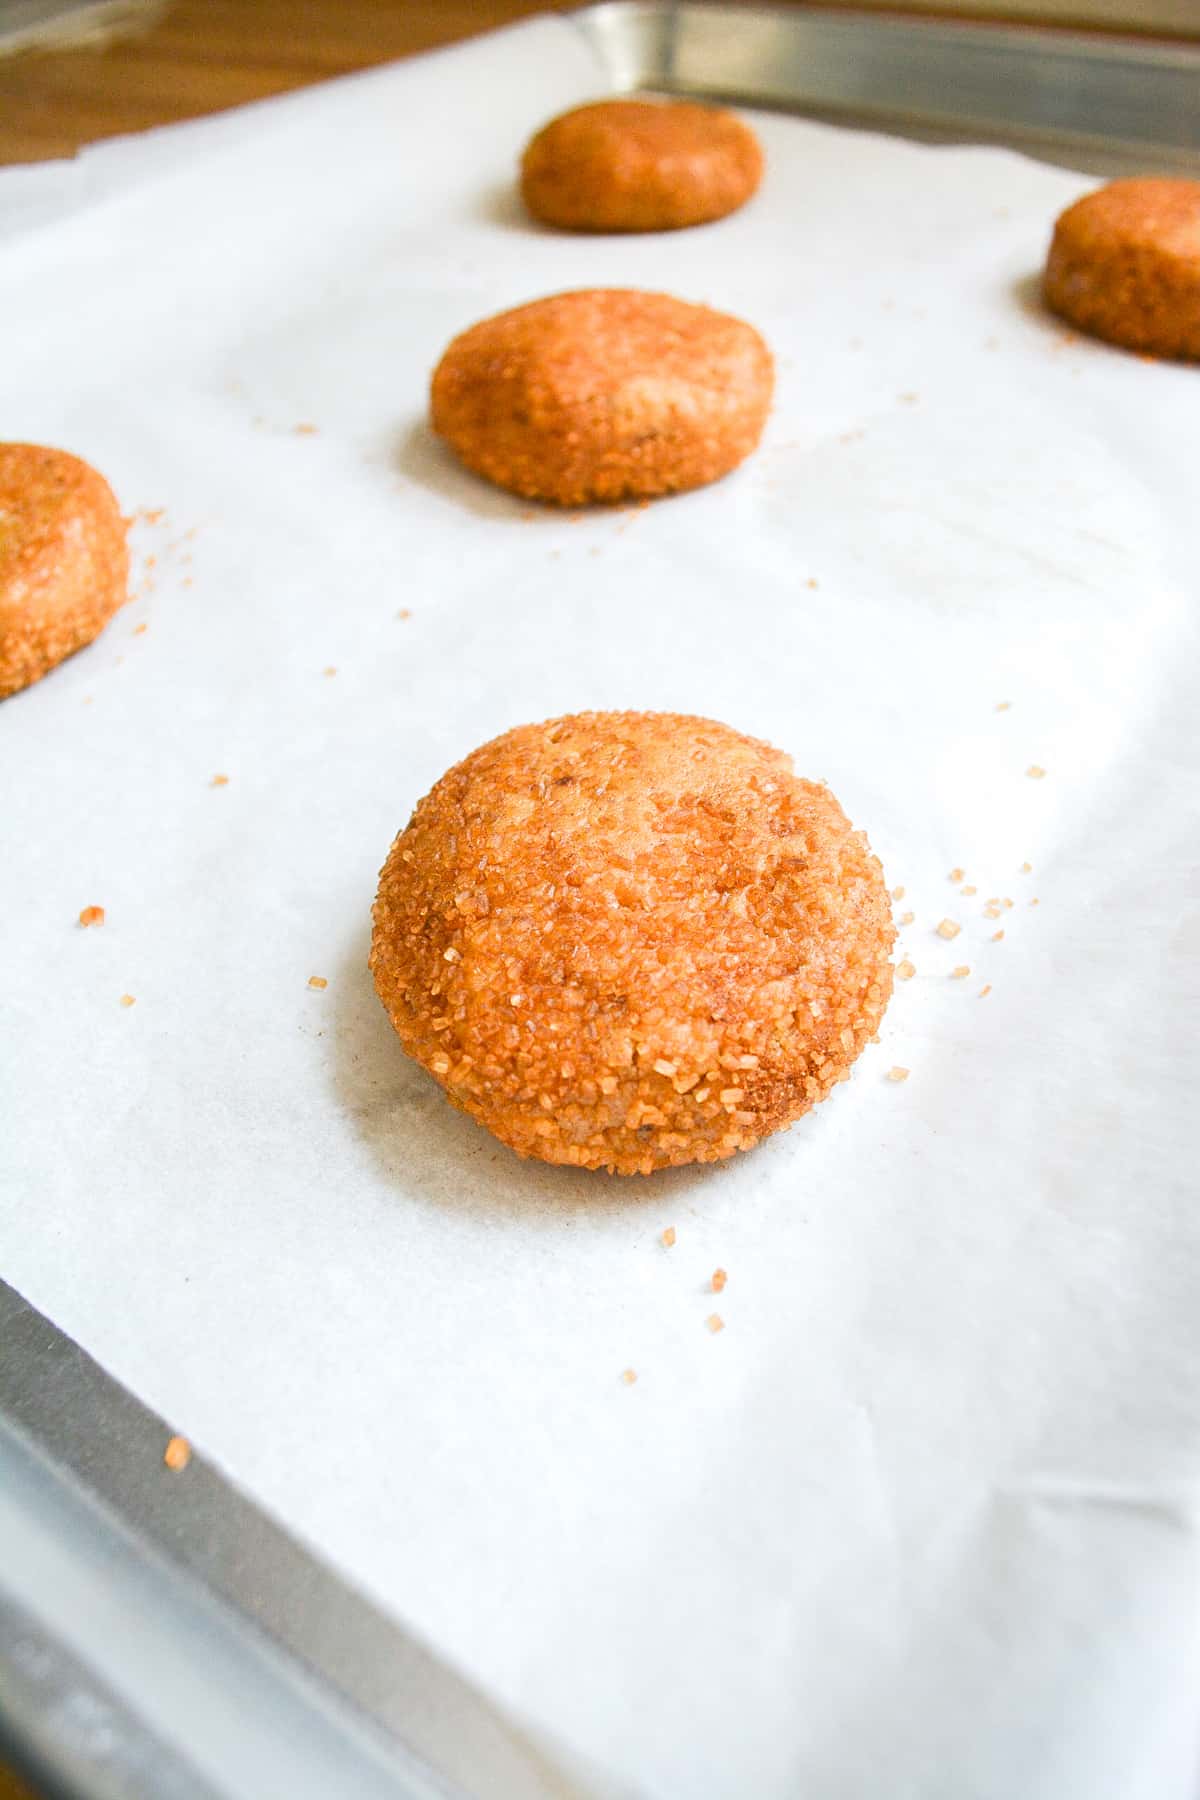 A cookie dough ball on a baking sheet